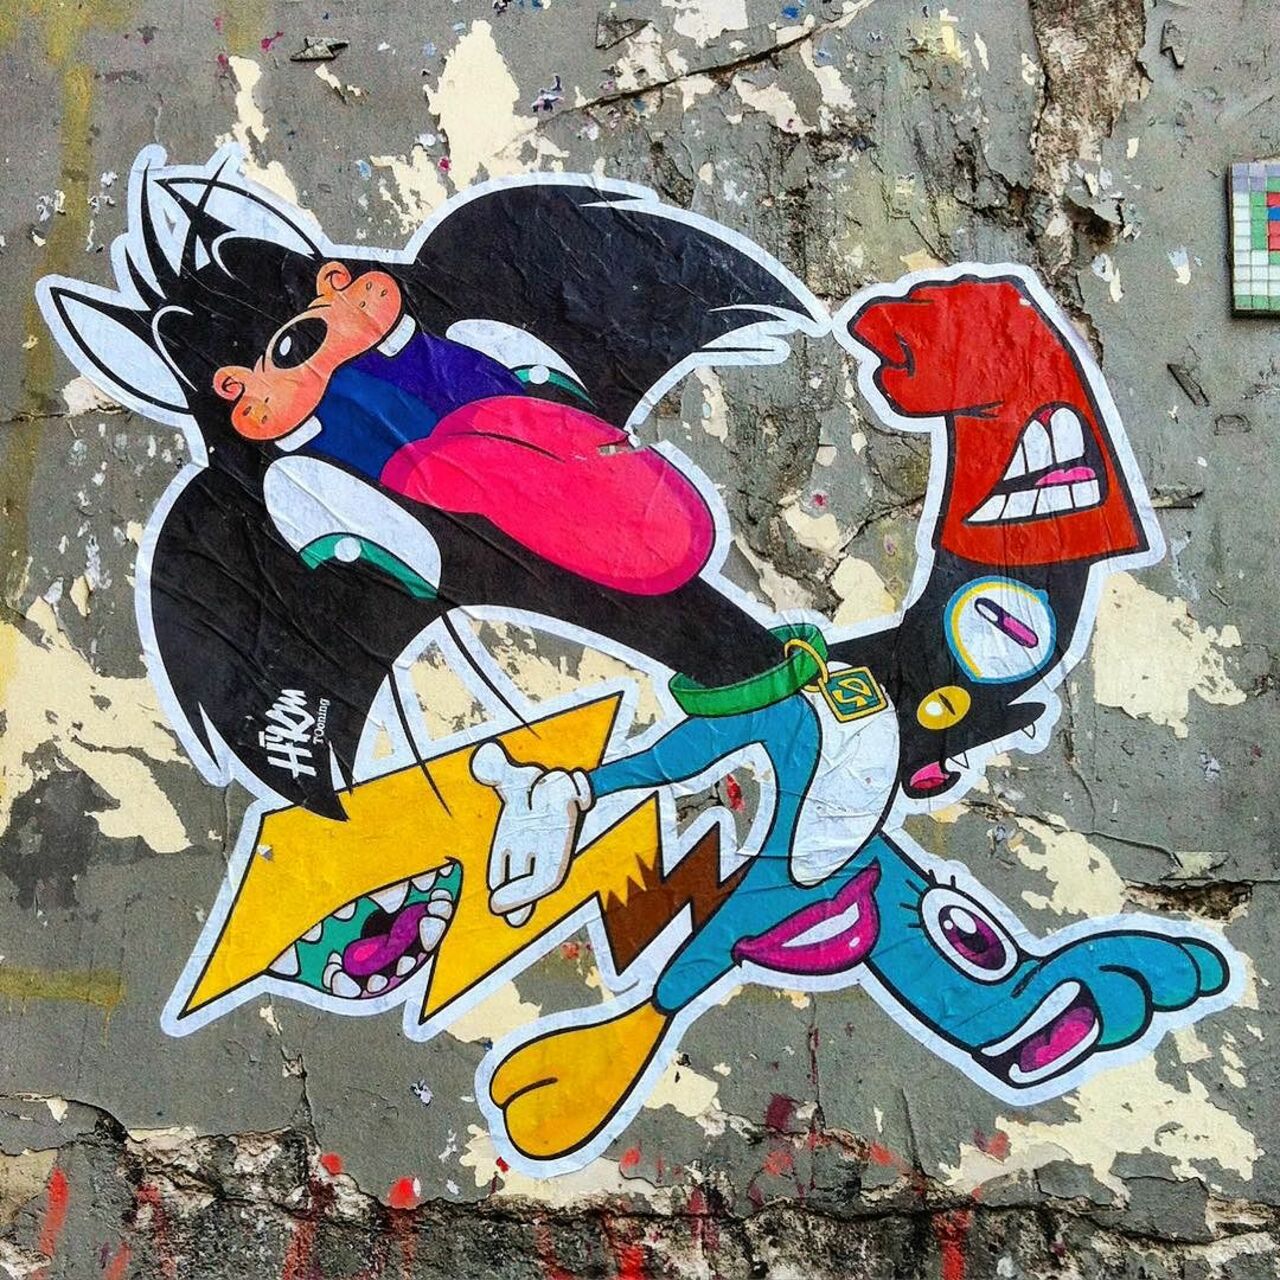 circumjacent_fr: #Paris #graffiti photo by jeanlucr http://ift.tt/1LIkpPi #StreetArt https://t.co/zfRNZtXfY7